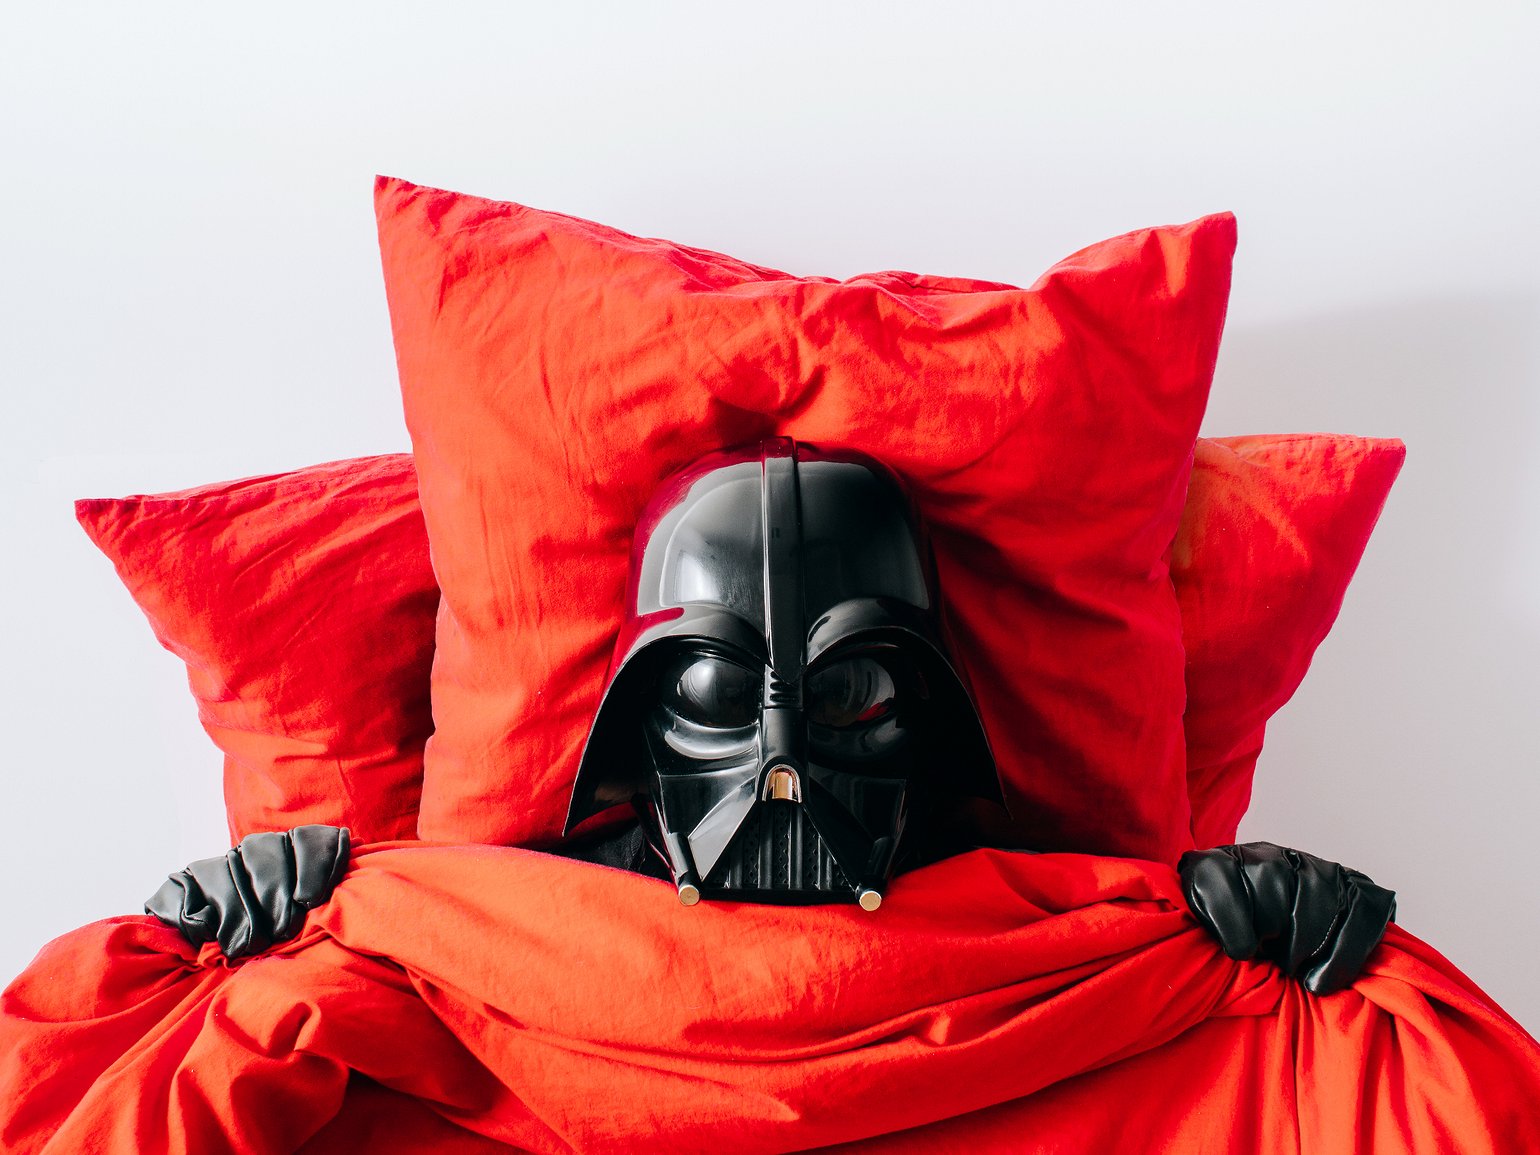 Can Vader sleep?